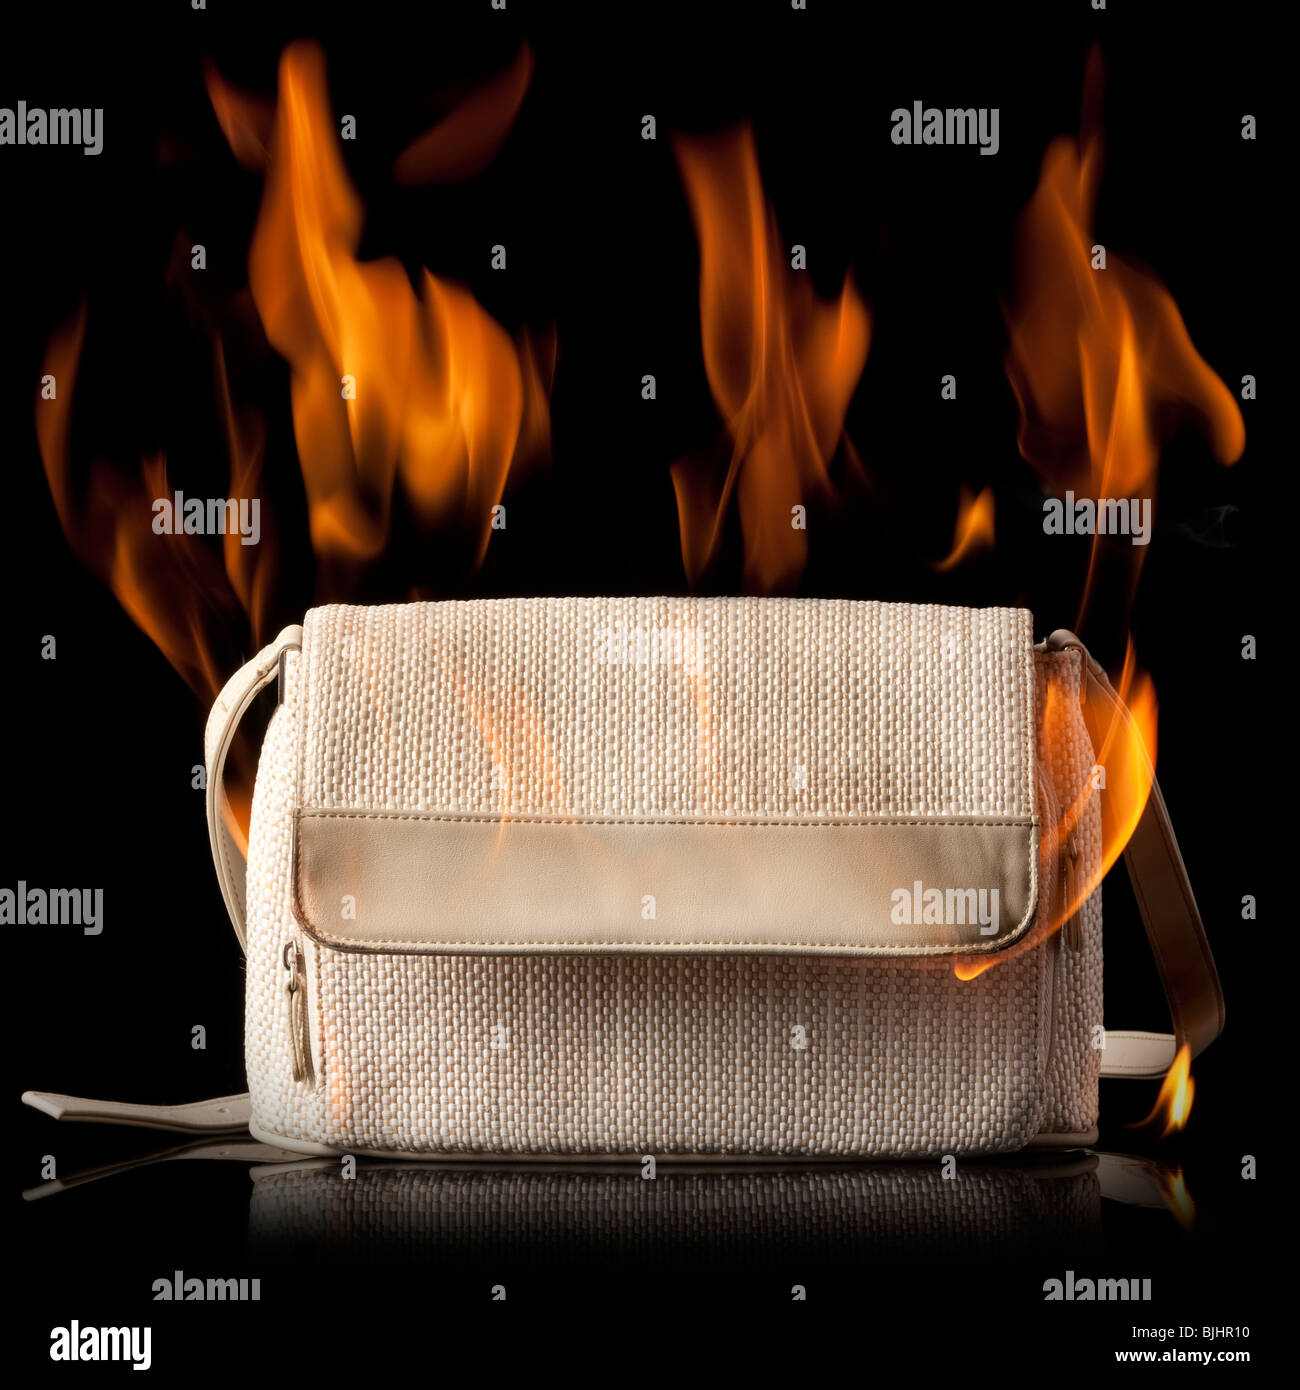 Handtasche in Brand Stockfoto